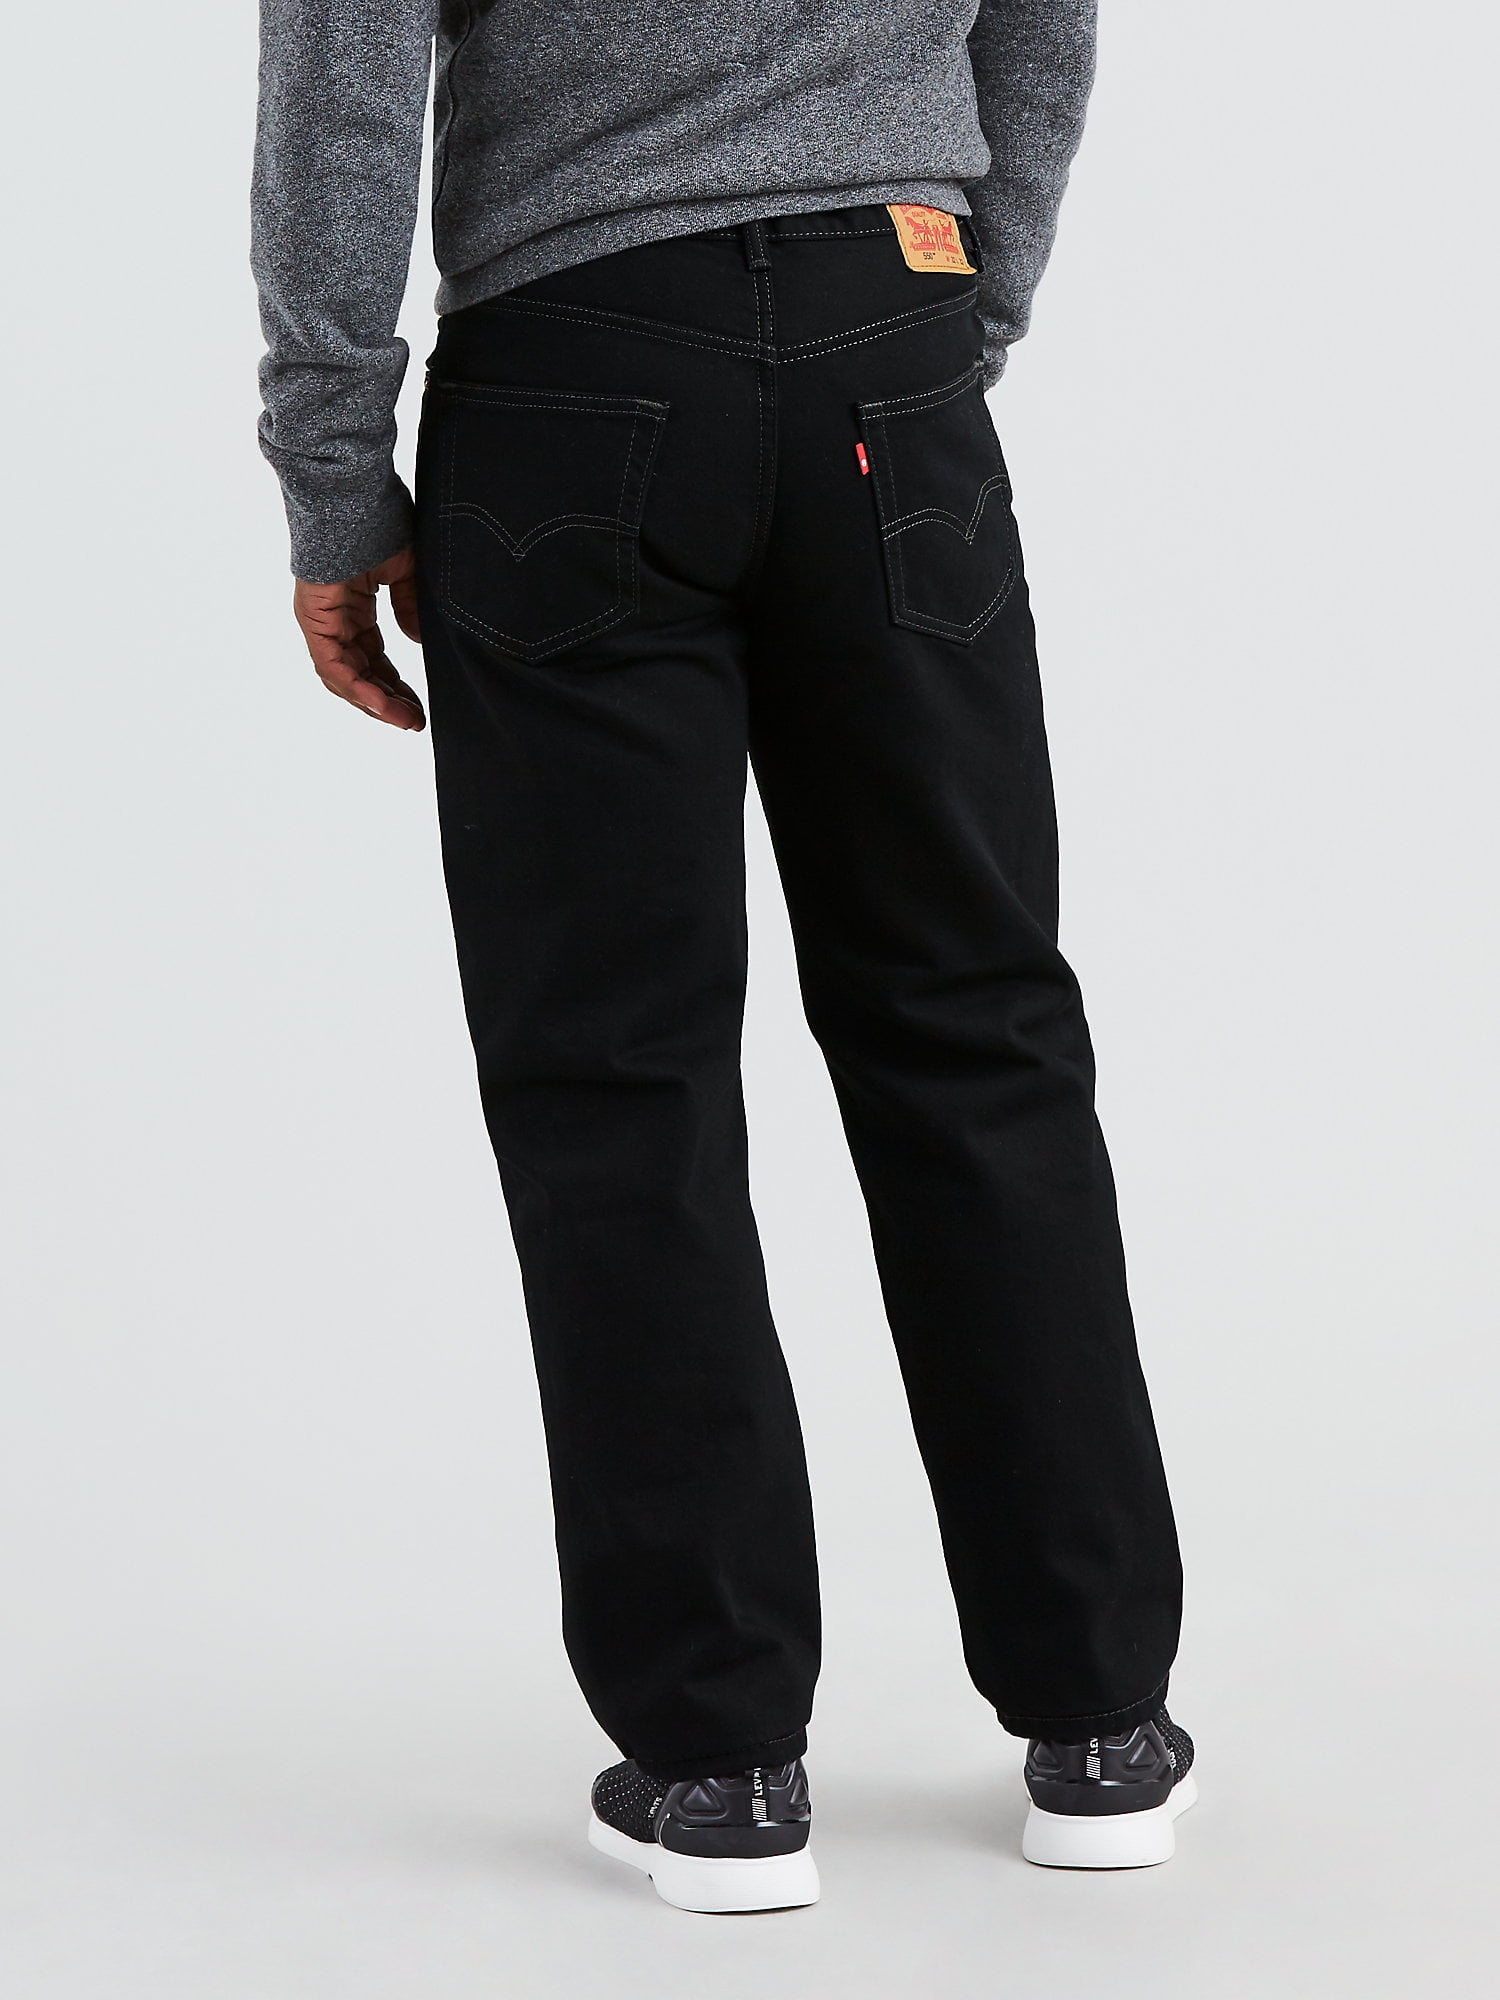 black levis jeans mens